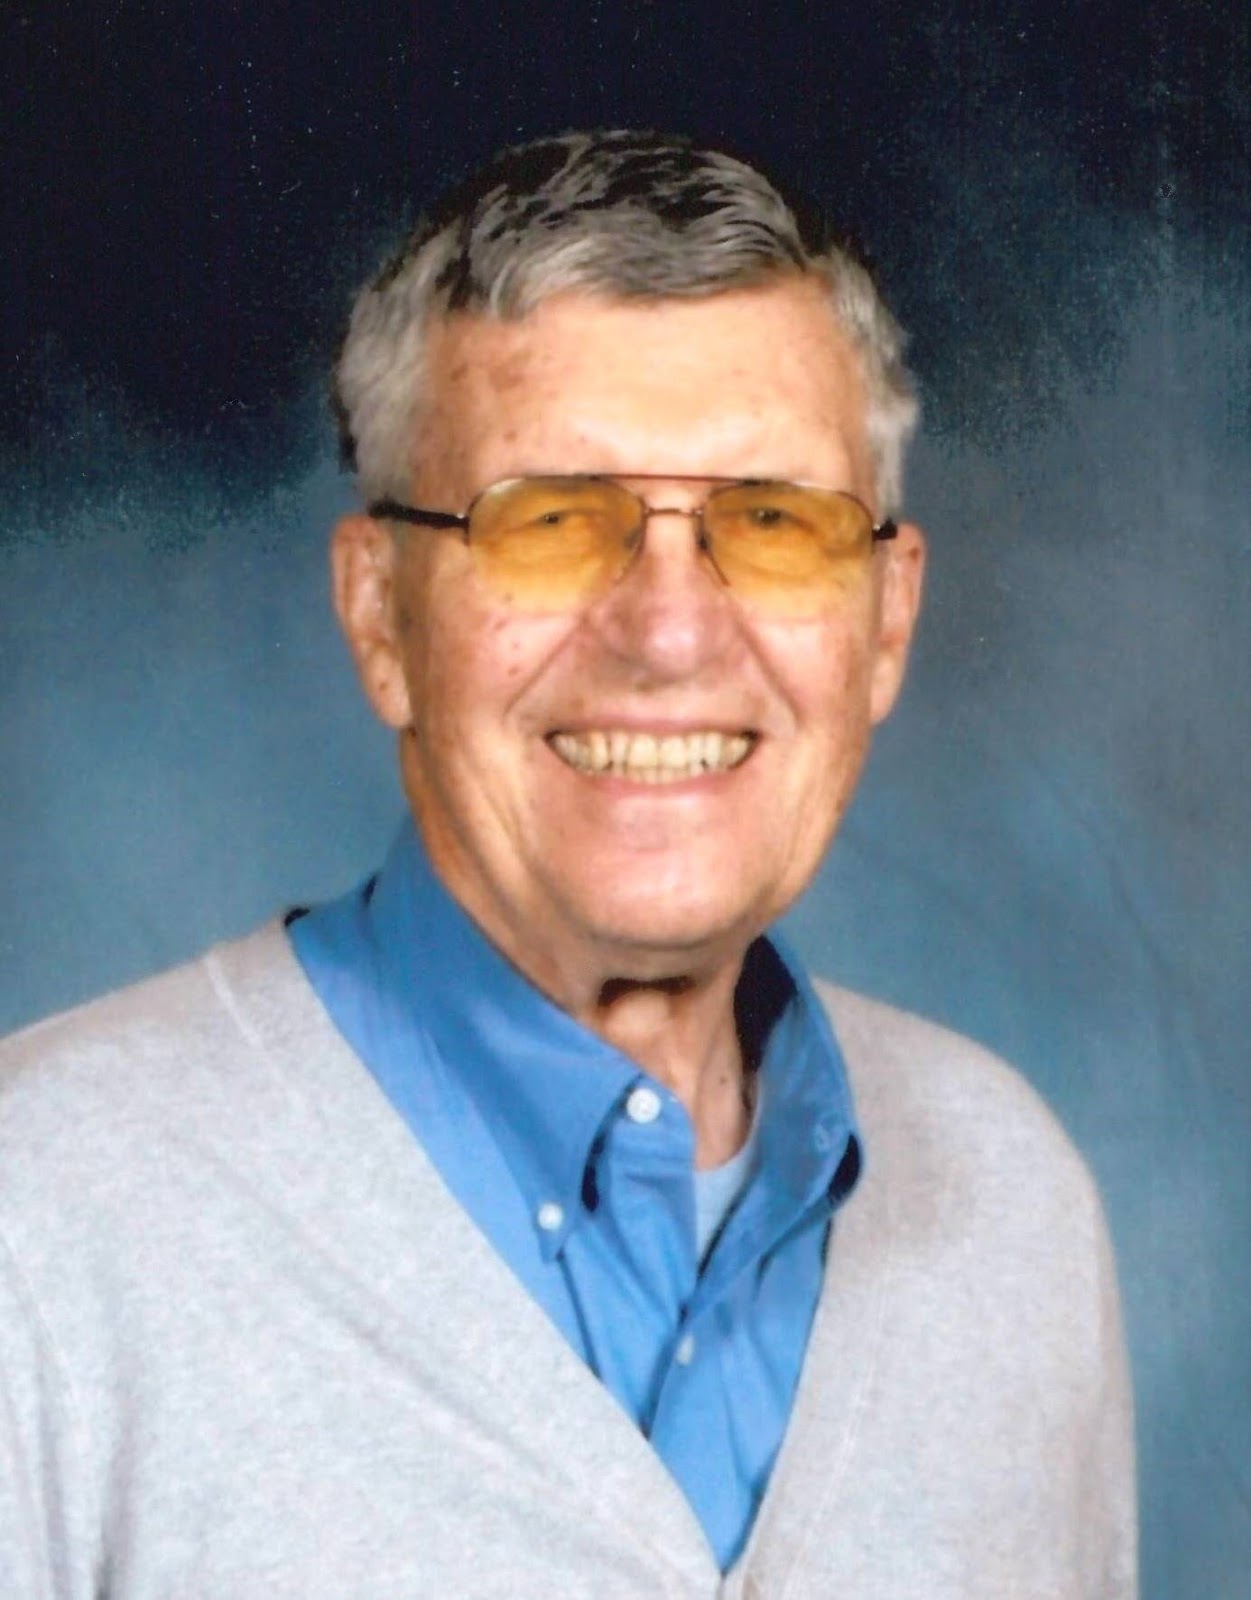 Obituaries: John L. Kutilek Died July 1, 2020